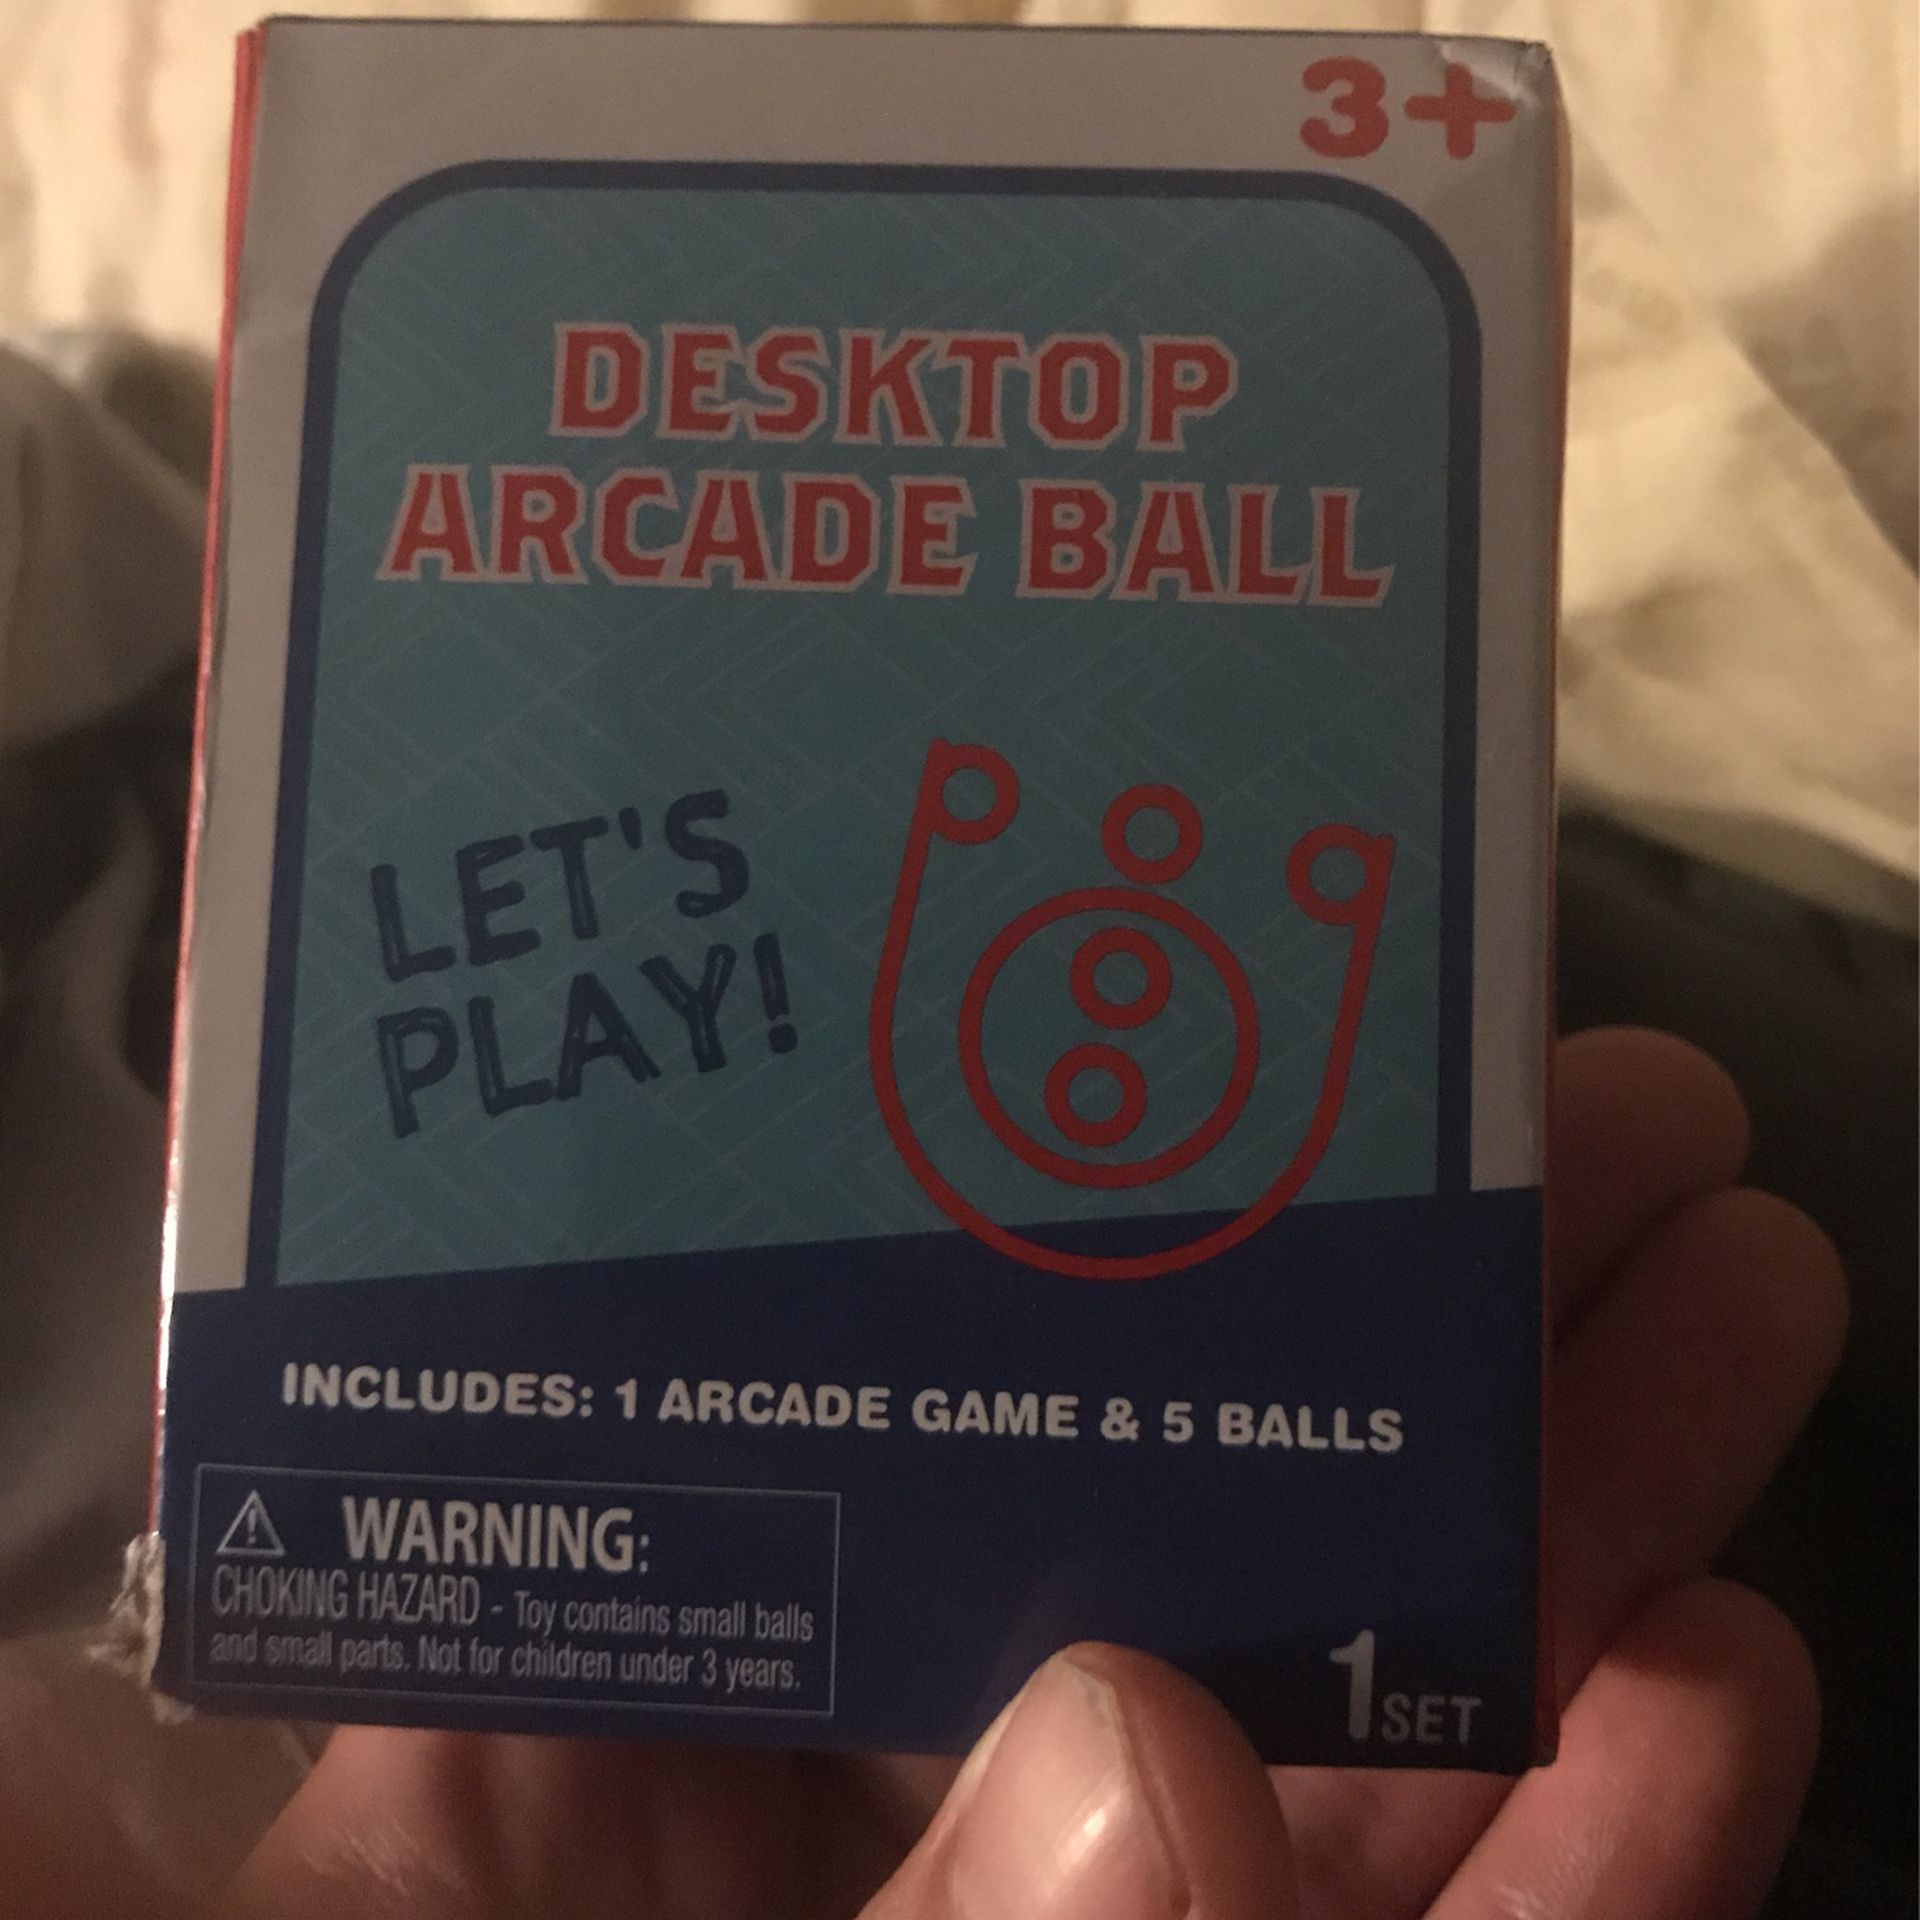 Desktop arcade ball let’s play